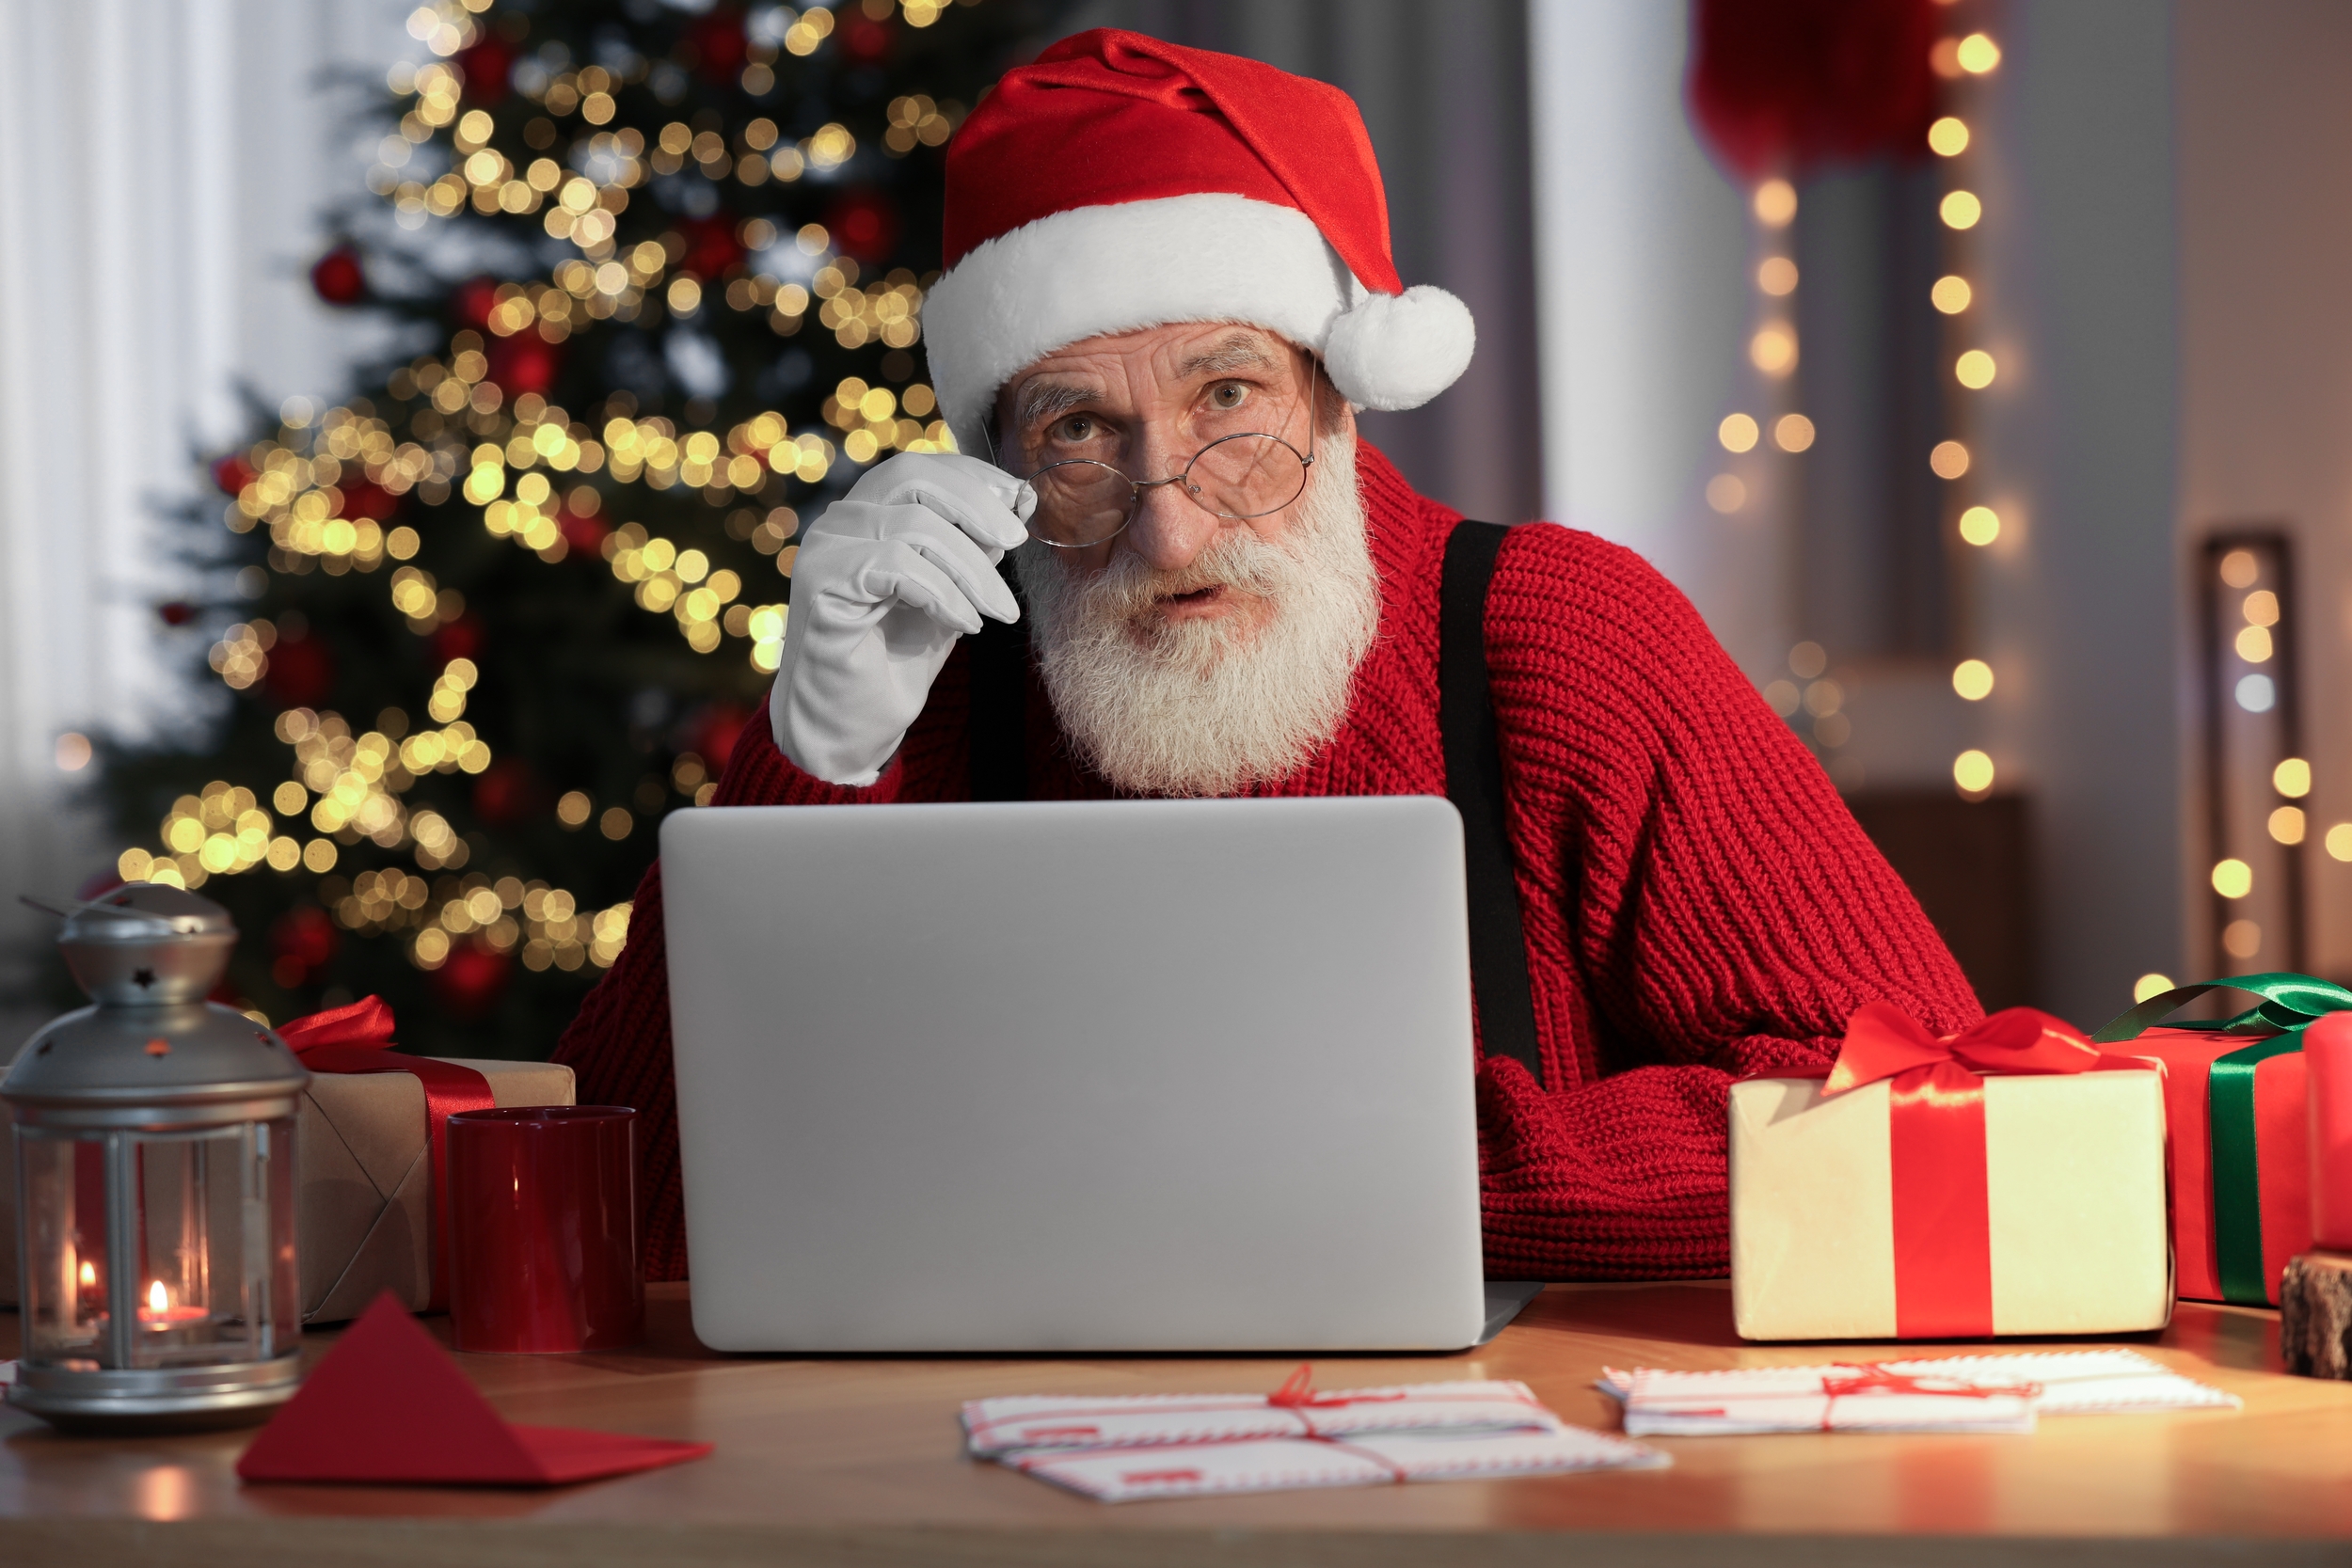 Achats de Noël : attention aux arnaques aux cartes cadeaux !